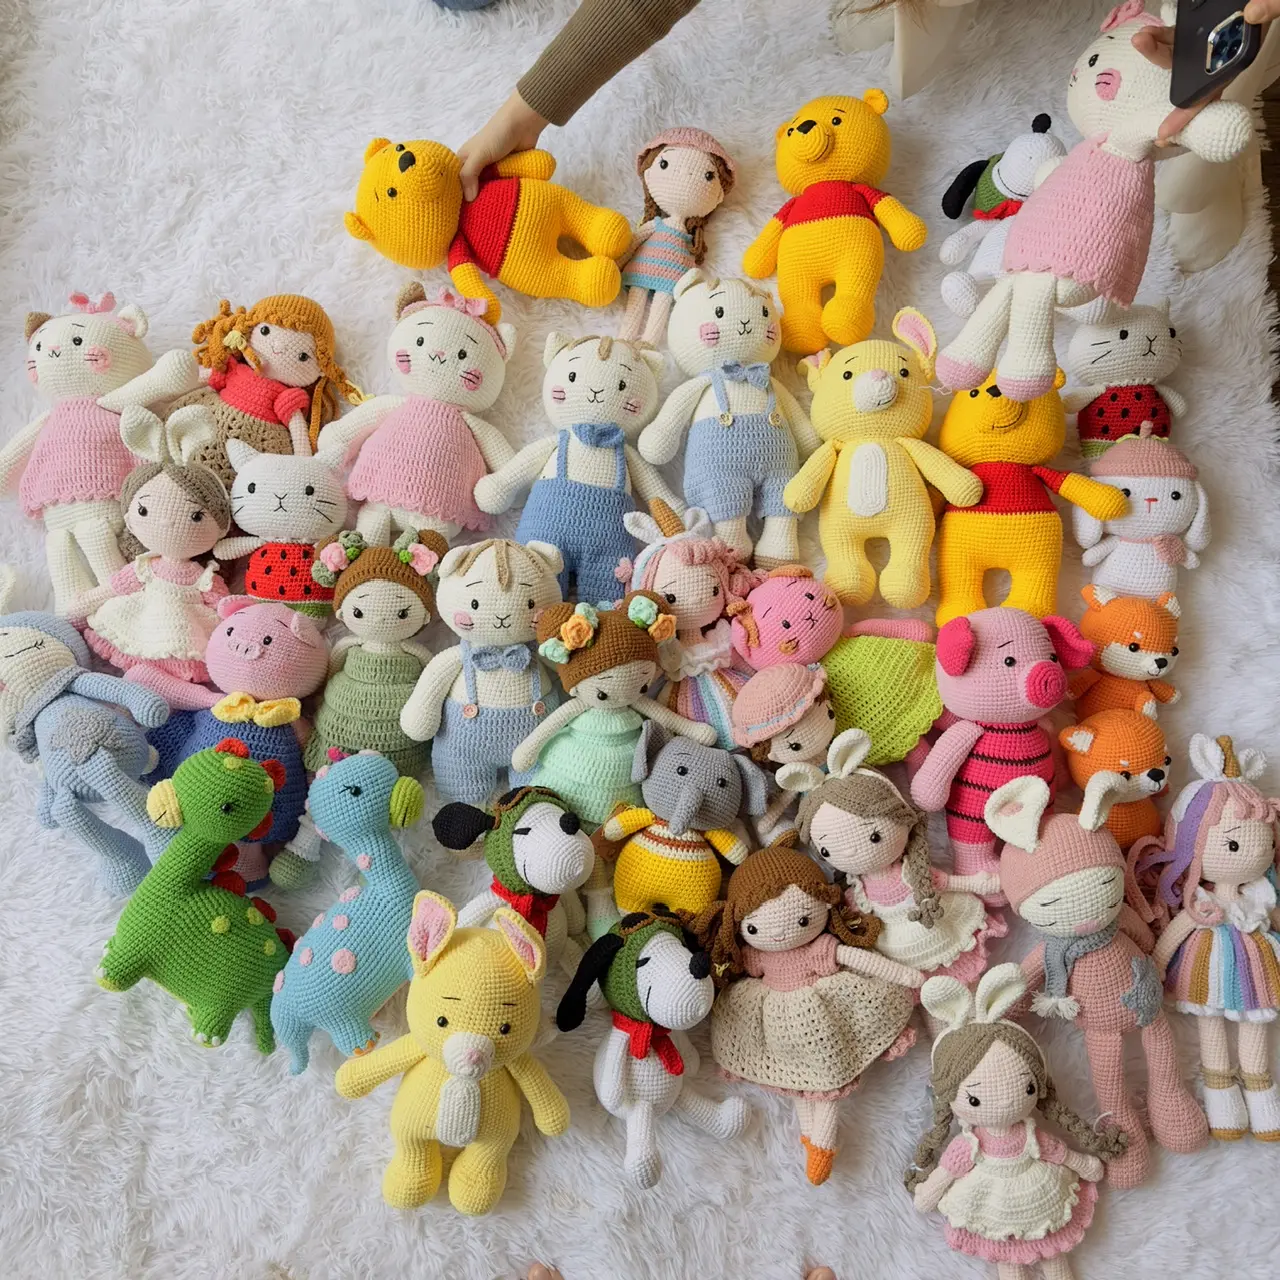 ¡Venta caliente! Adorables muñecas y animales hechos a mano de ganchillo coloridos juguetes de peluche Amigurumi juguetes de ganchillo para bebé niña y niño